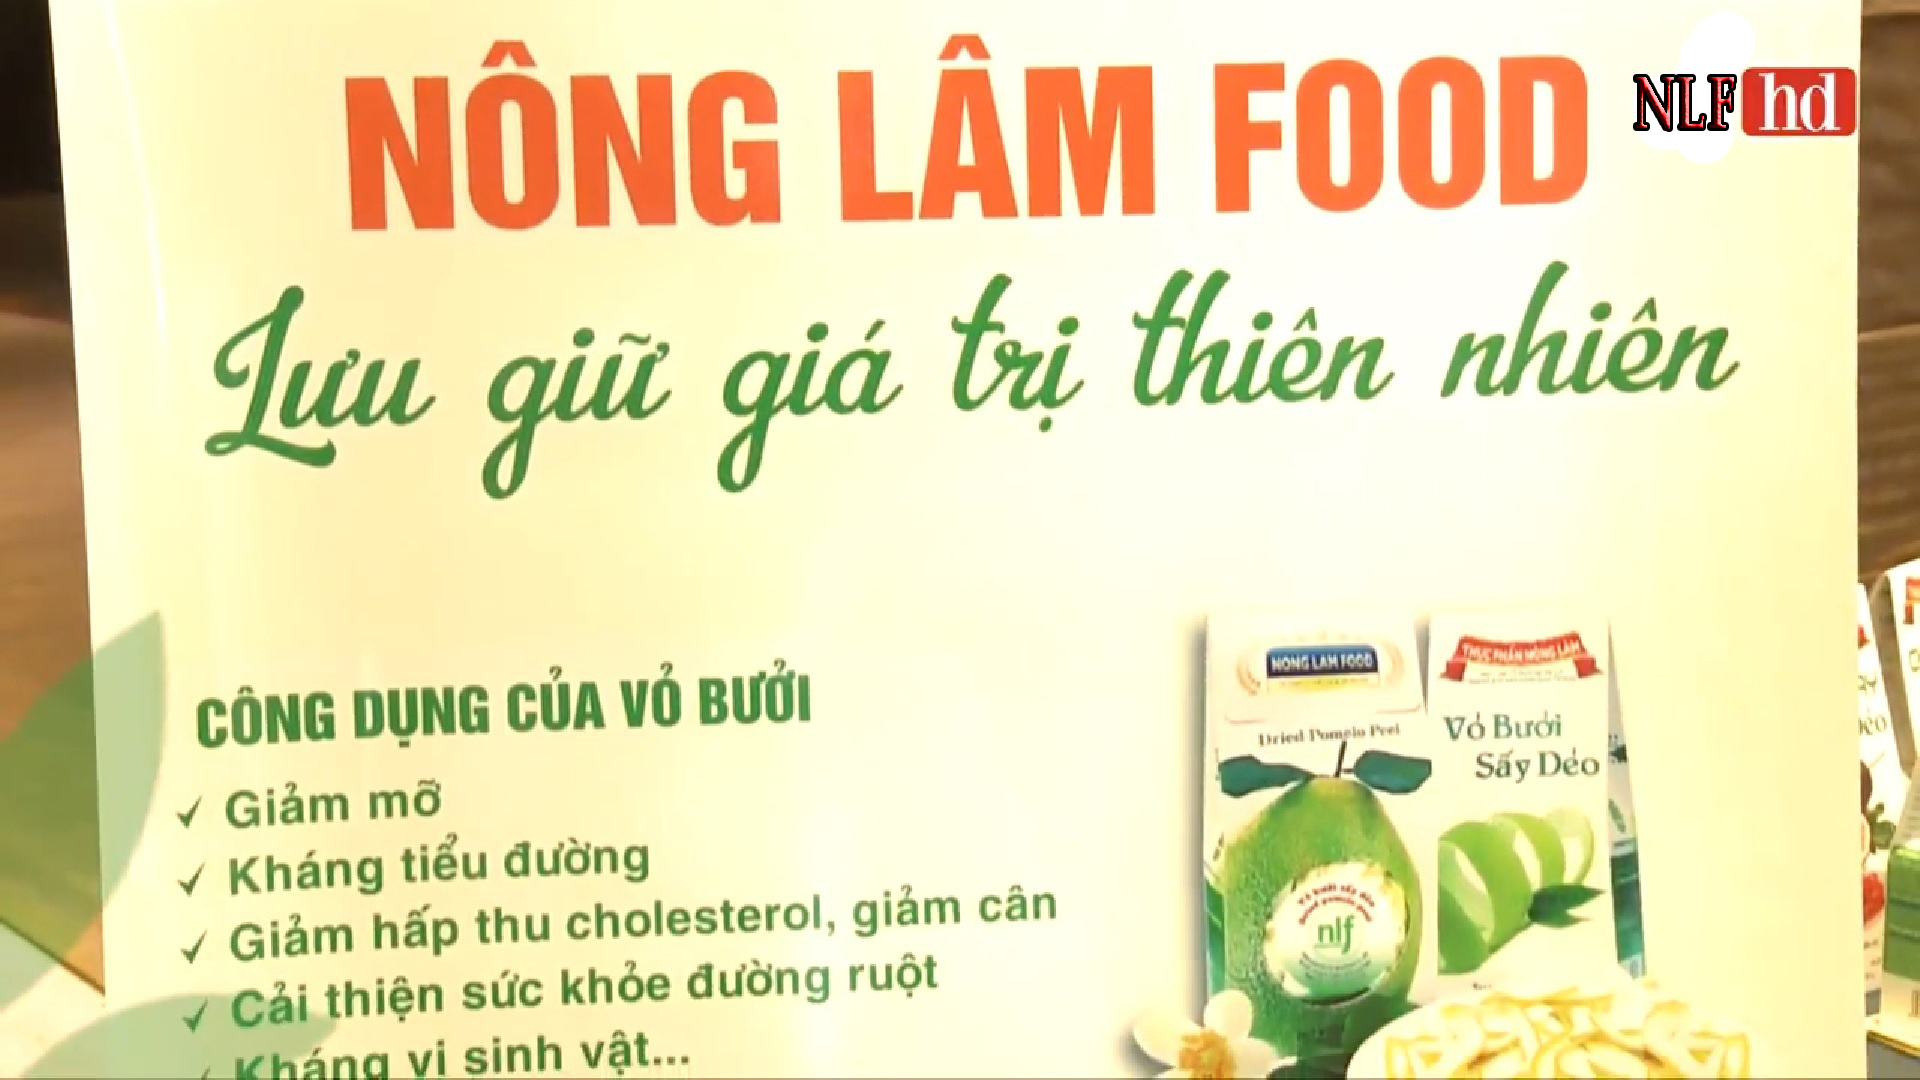 Đại Hội Hiệp Hội Thực Phẩm Minh Bạch - Nong Lam Food